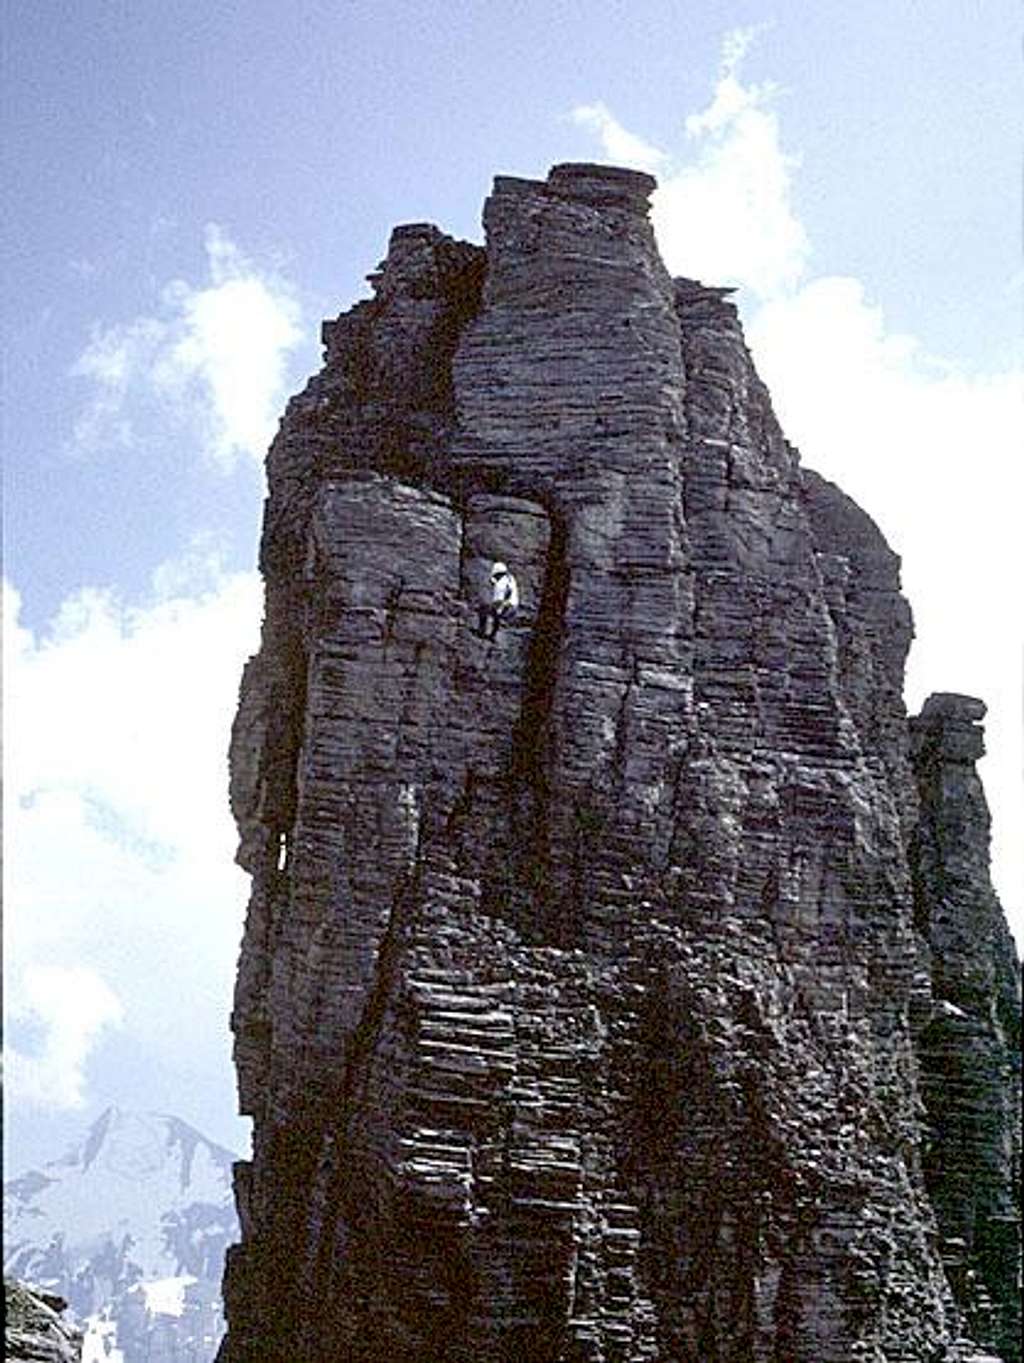 Summit tower, Tschingellochtighorn.